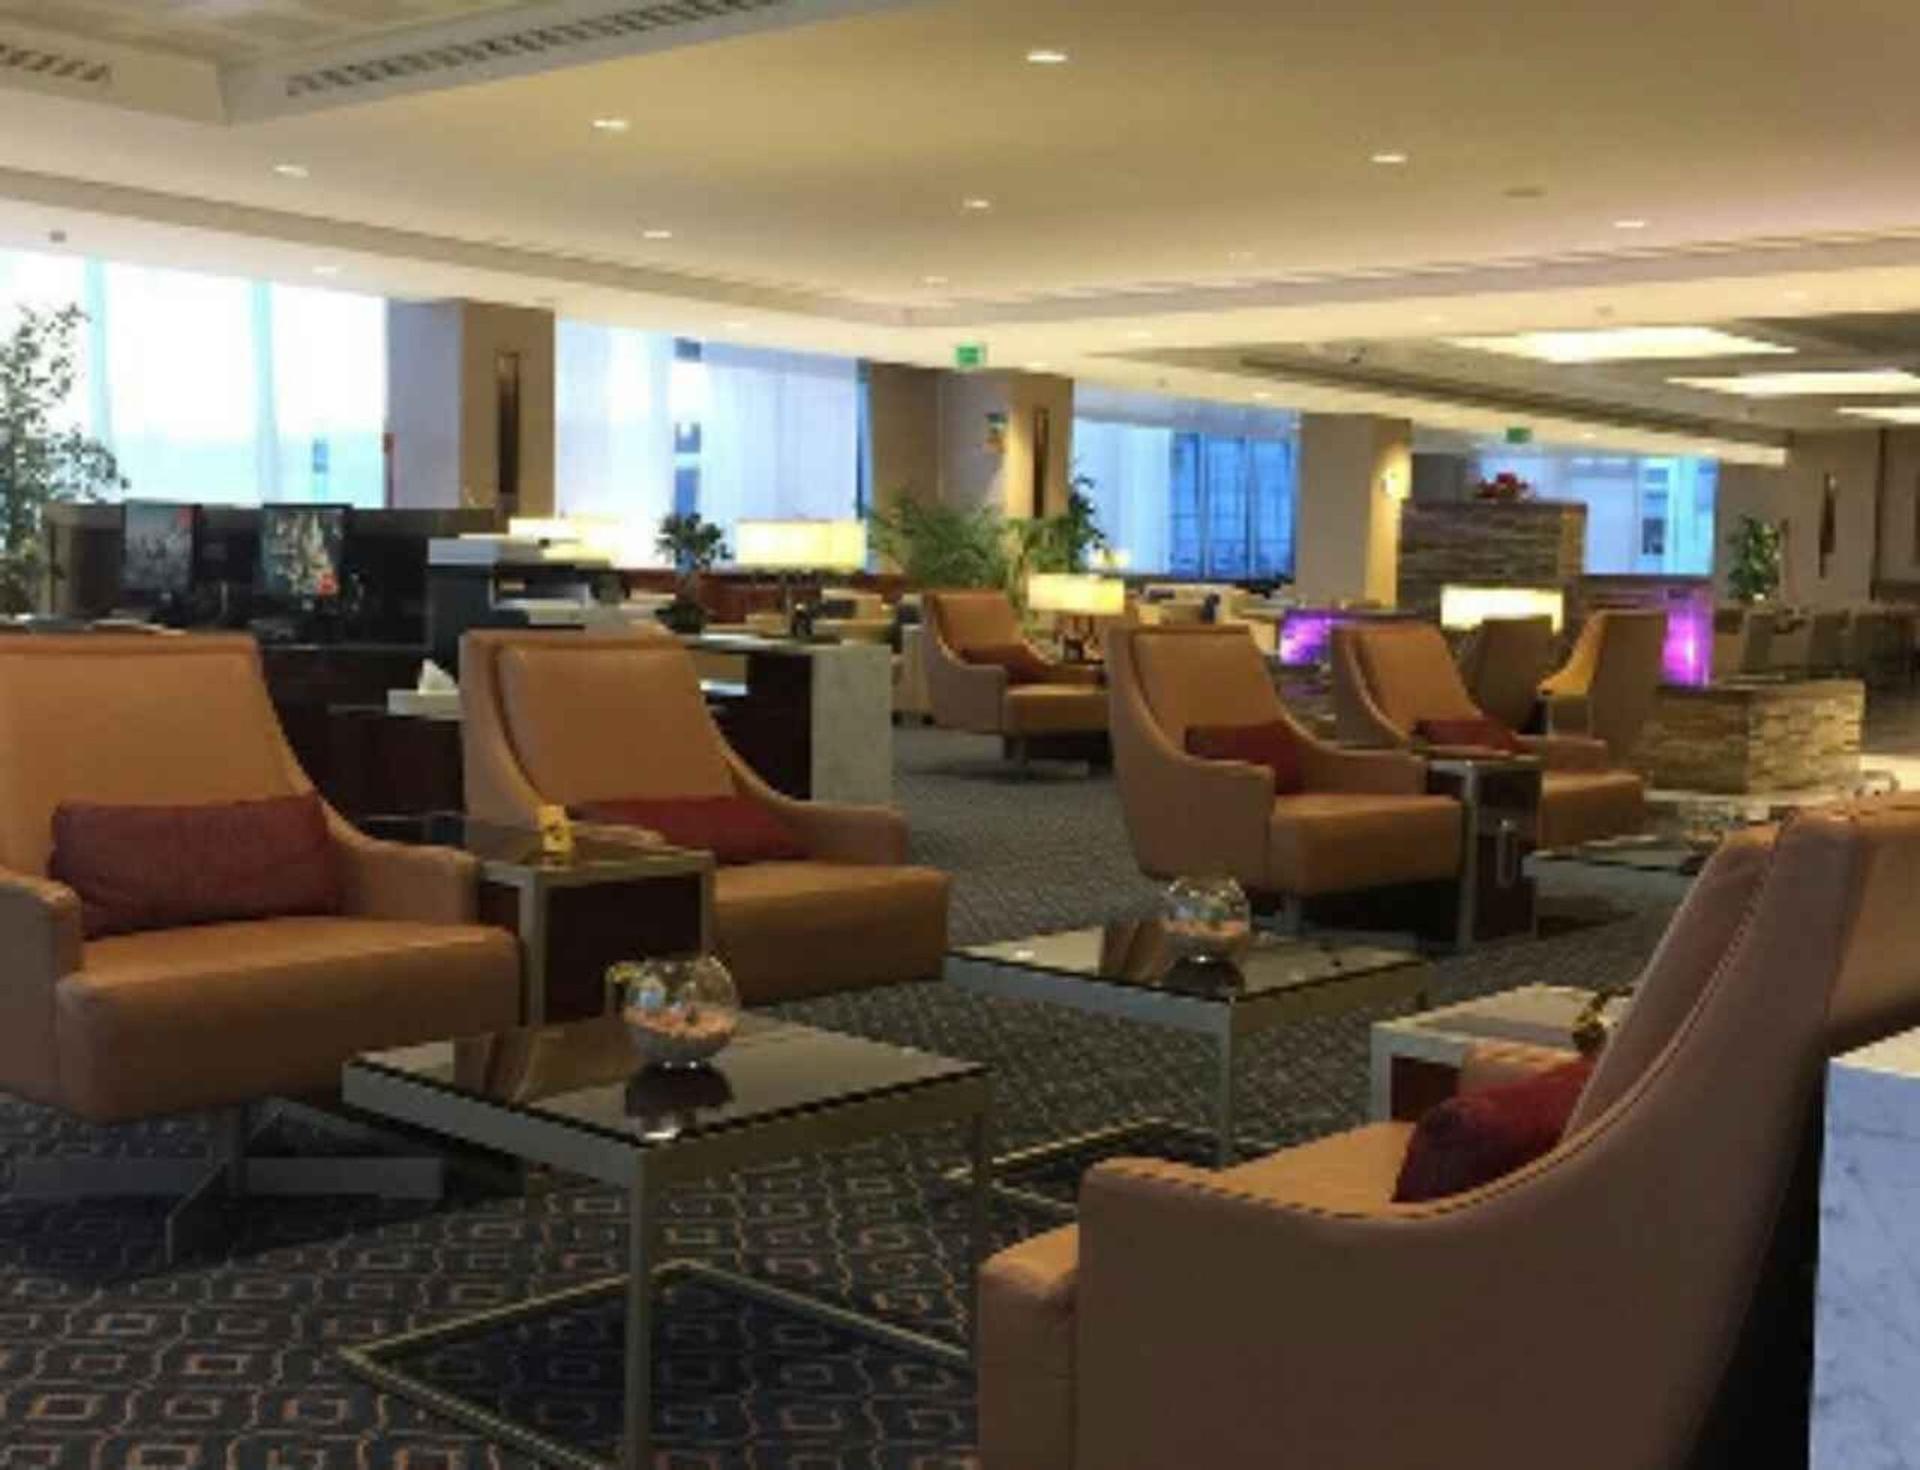 The Emirates Lounge image 5 of 13